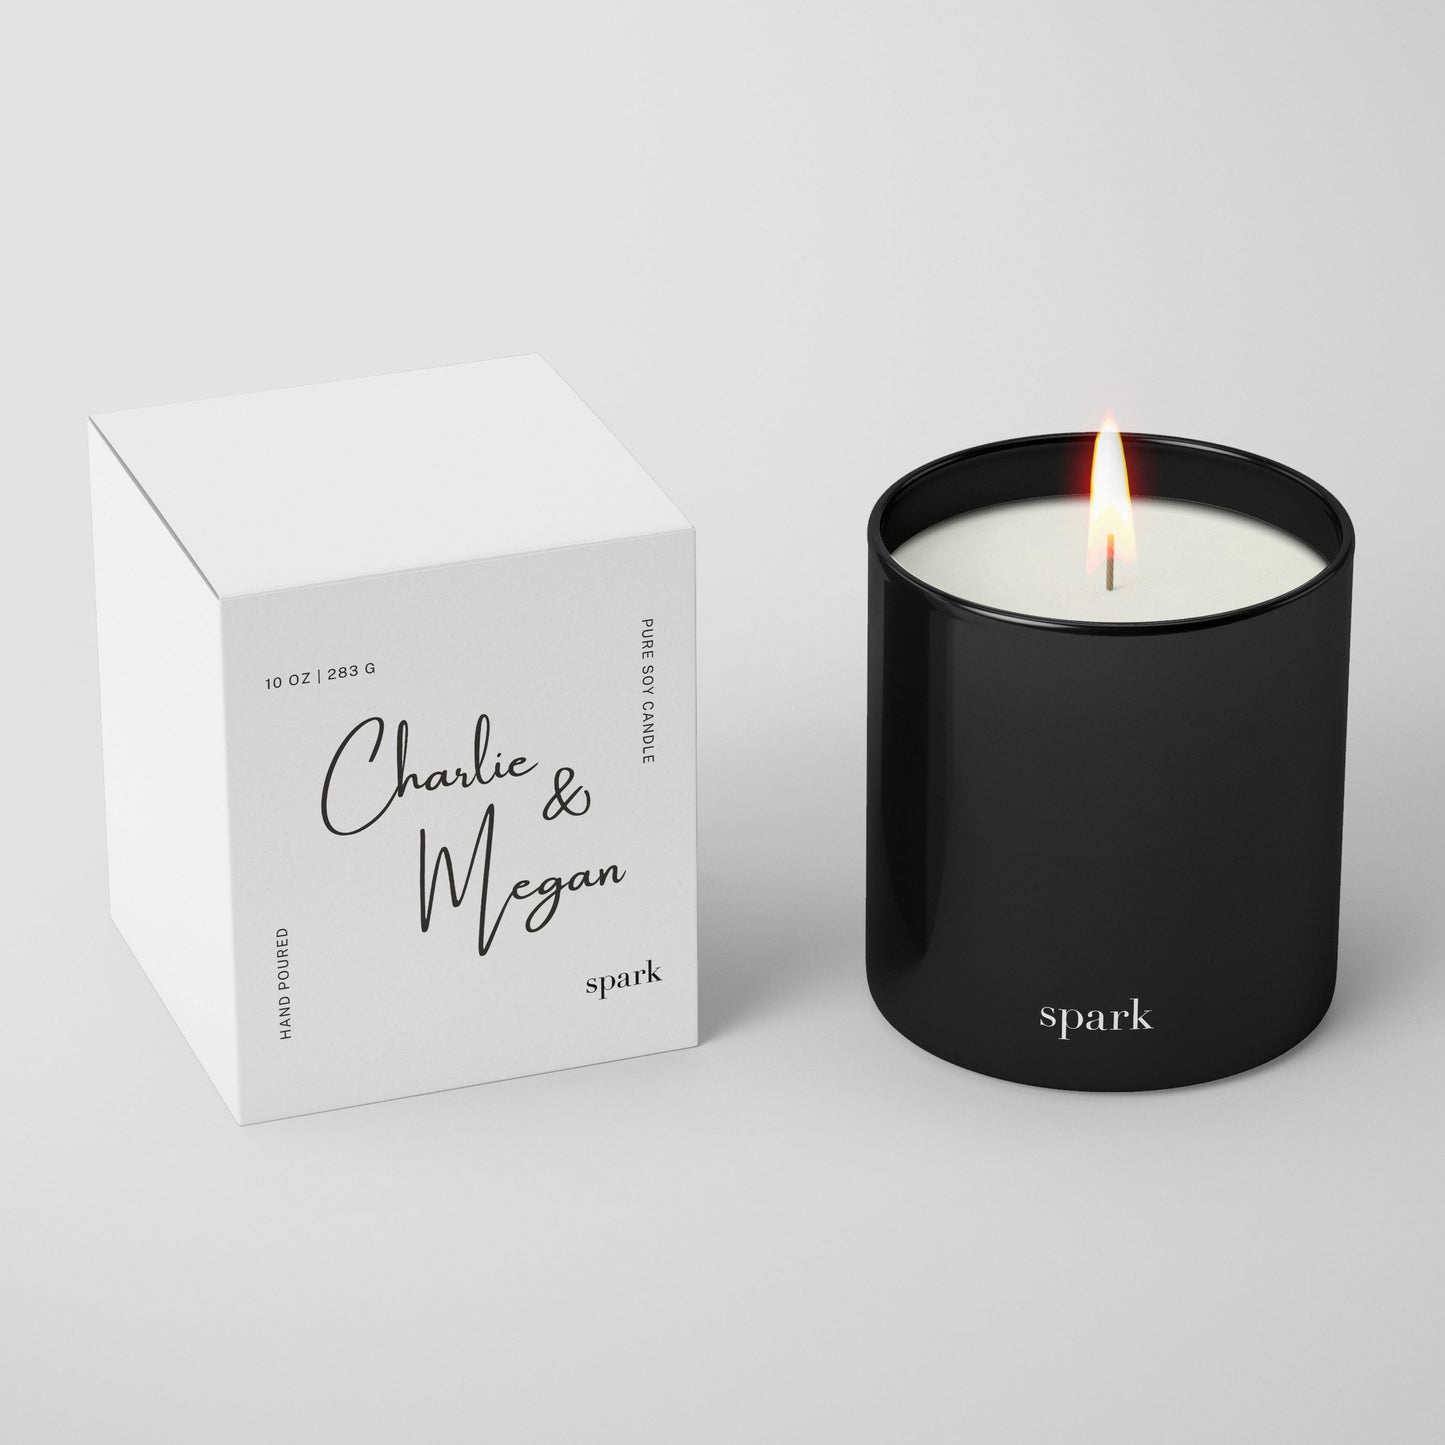 Custom Printed Gift Box + Black Glass Candle